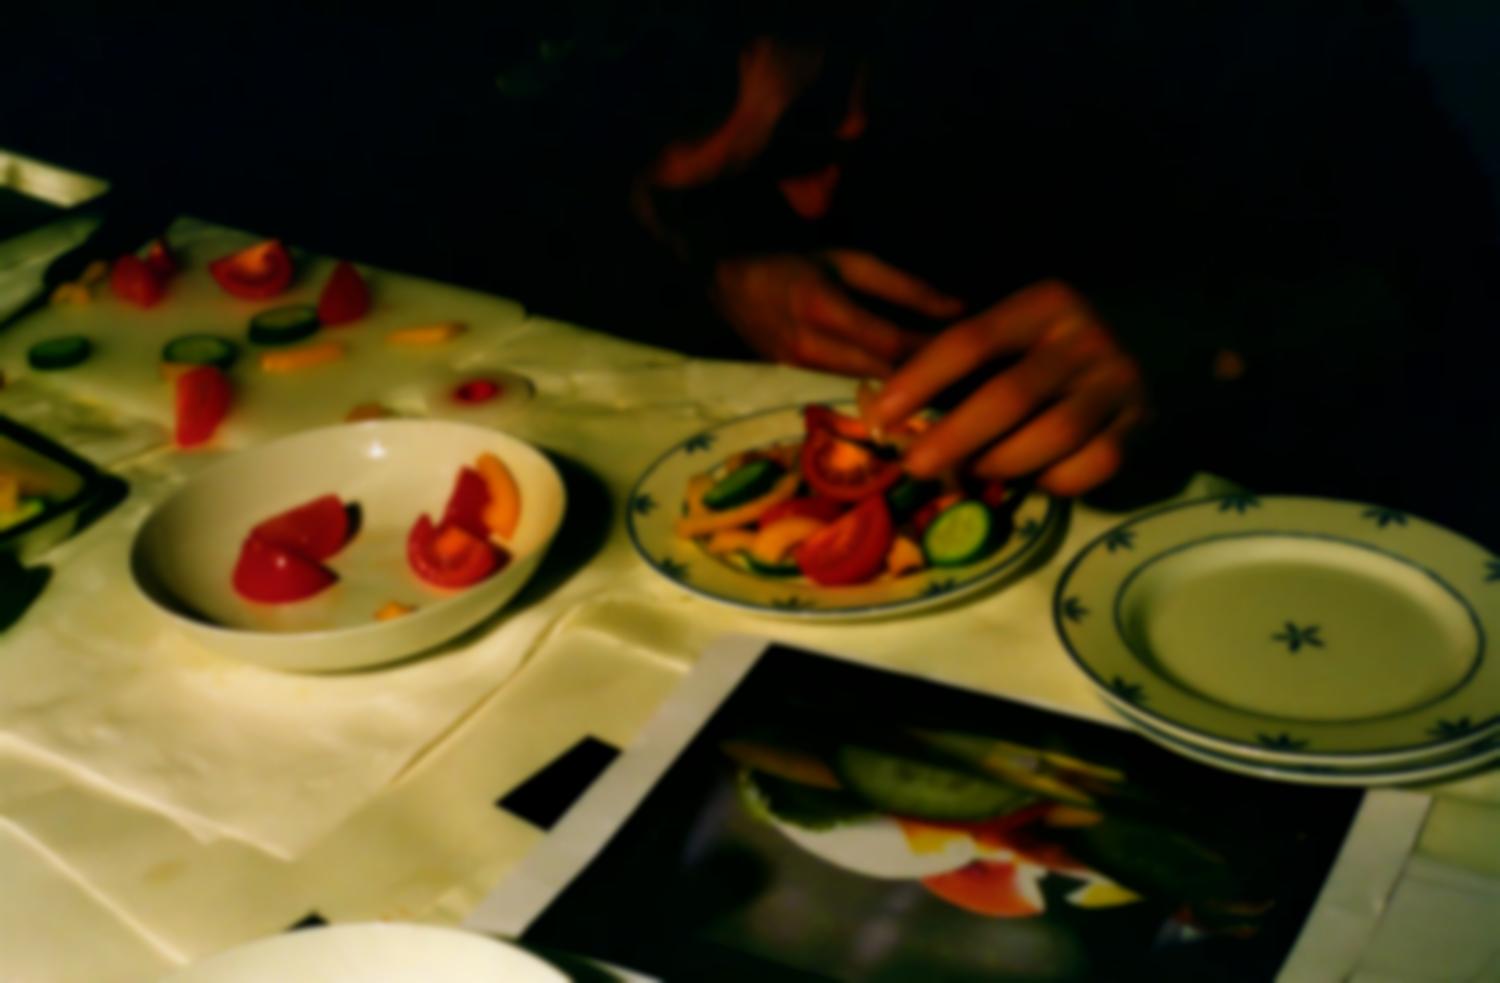 Tournage d'une publicité pour de la mayonnaise : le designer culinaire prépare une assiette de salade d'après une photo fournie par le client. Gennevilliers, décembre 2007.